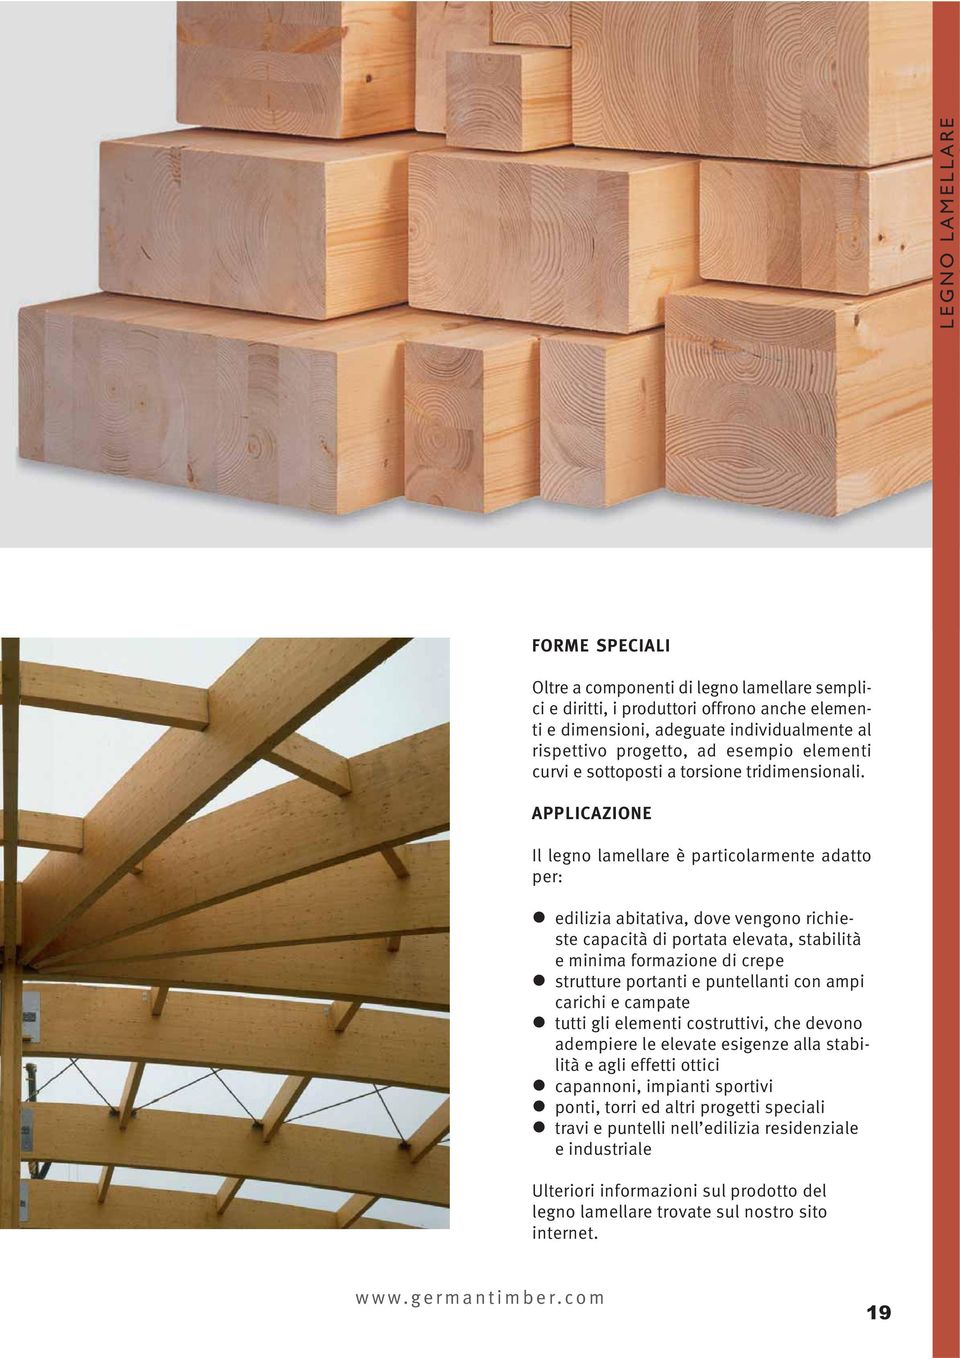 APPLICAZIONE Il legno lamellare è particolarmente adatto per: edilizia abitativa, dove vengono richieste capacità di portata elevata, stabilità e minima formazione di crepe strutture portanti e